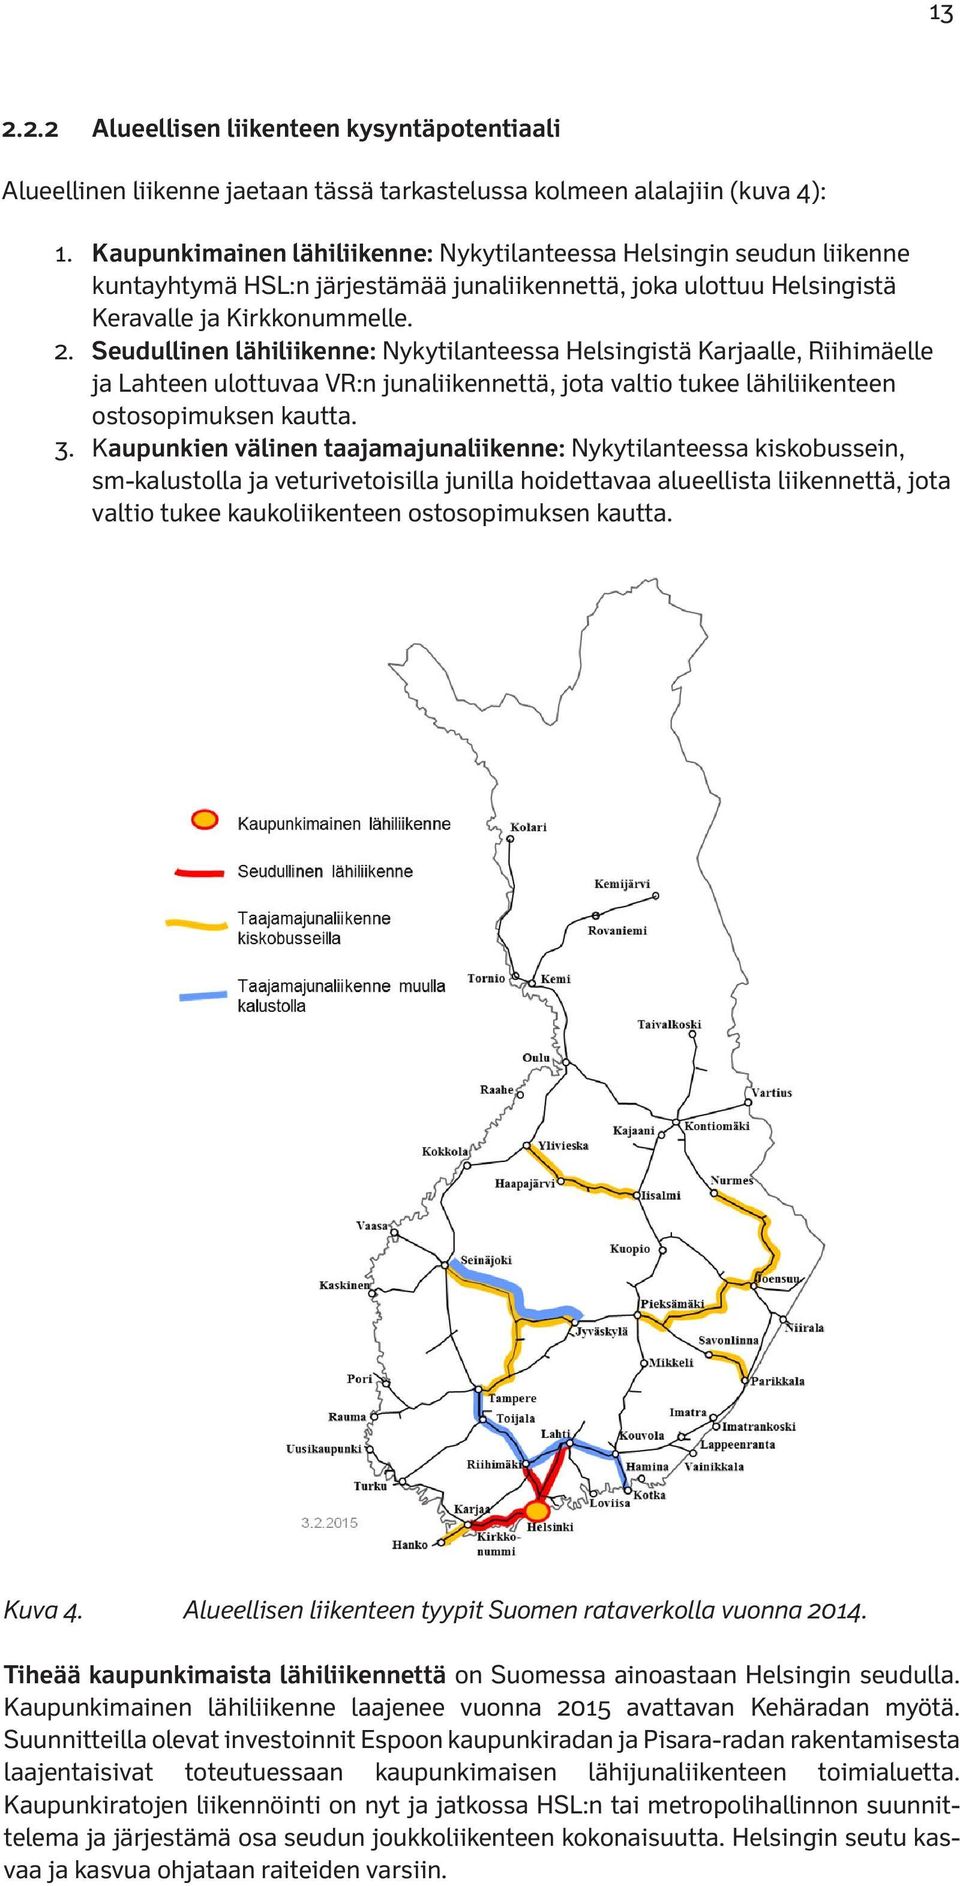 Seudullinen lähiliikenne: Nykytilanteessa Helsingistä Karjaalle, Riihimäelle ja Lahteen ulottuvaa VR:n junaliikennettä, jota valtio tukee lähiliikenteen ostosopimuksen kautta. 3.